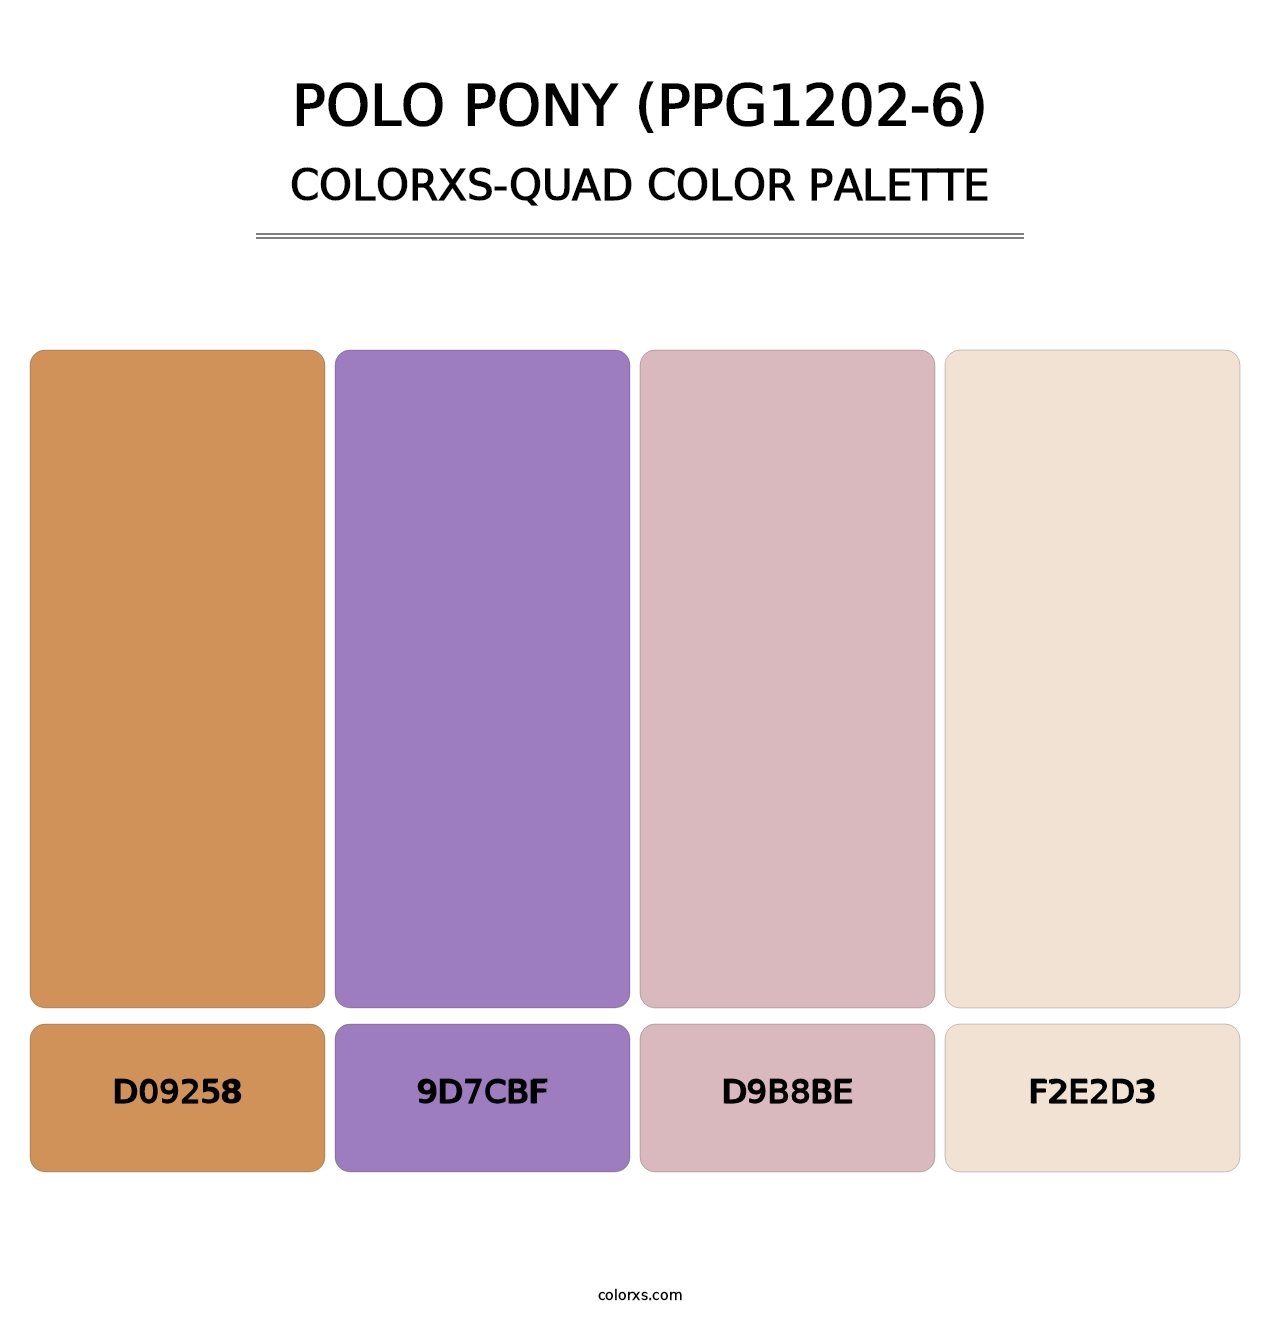 Polo Pony (PPG1202-6) - Colorxs Quad Palette